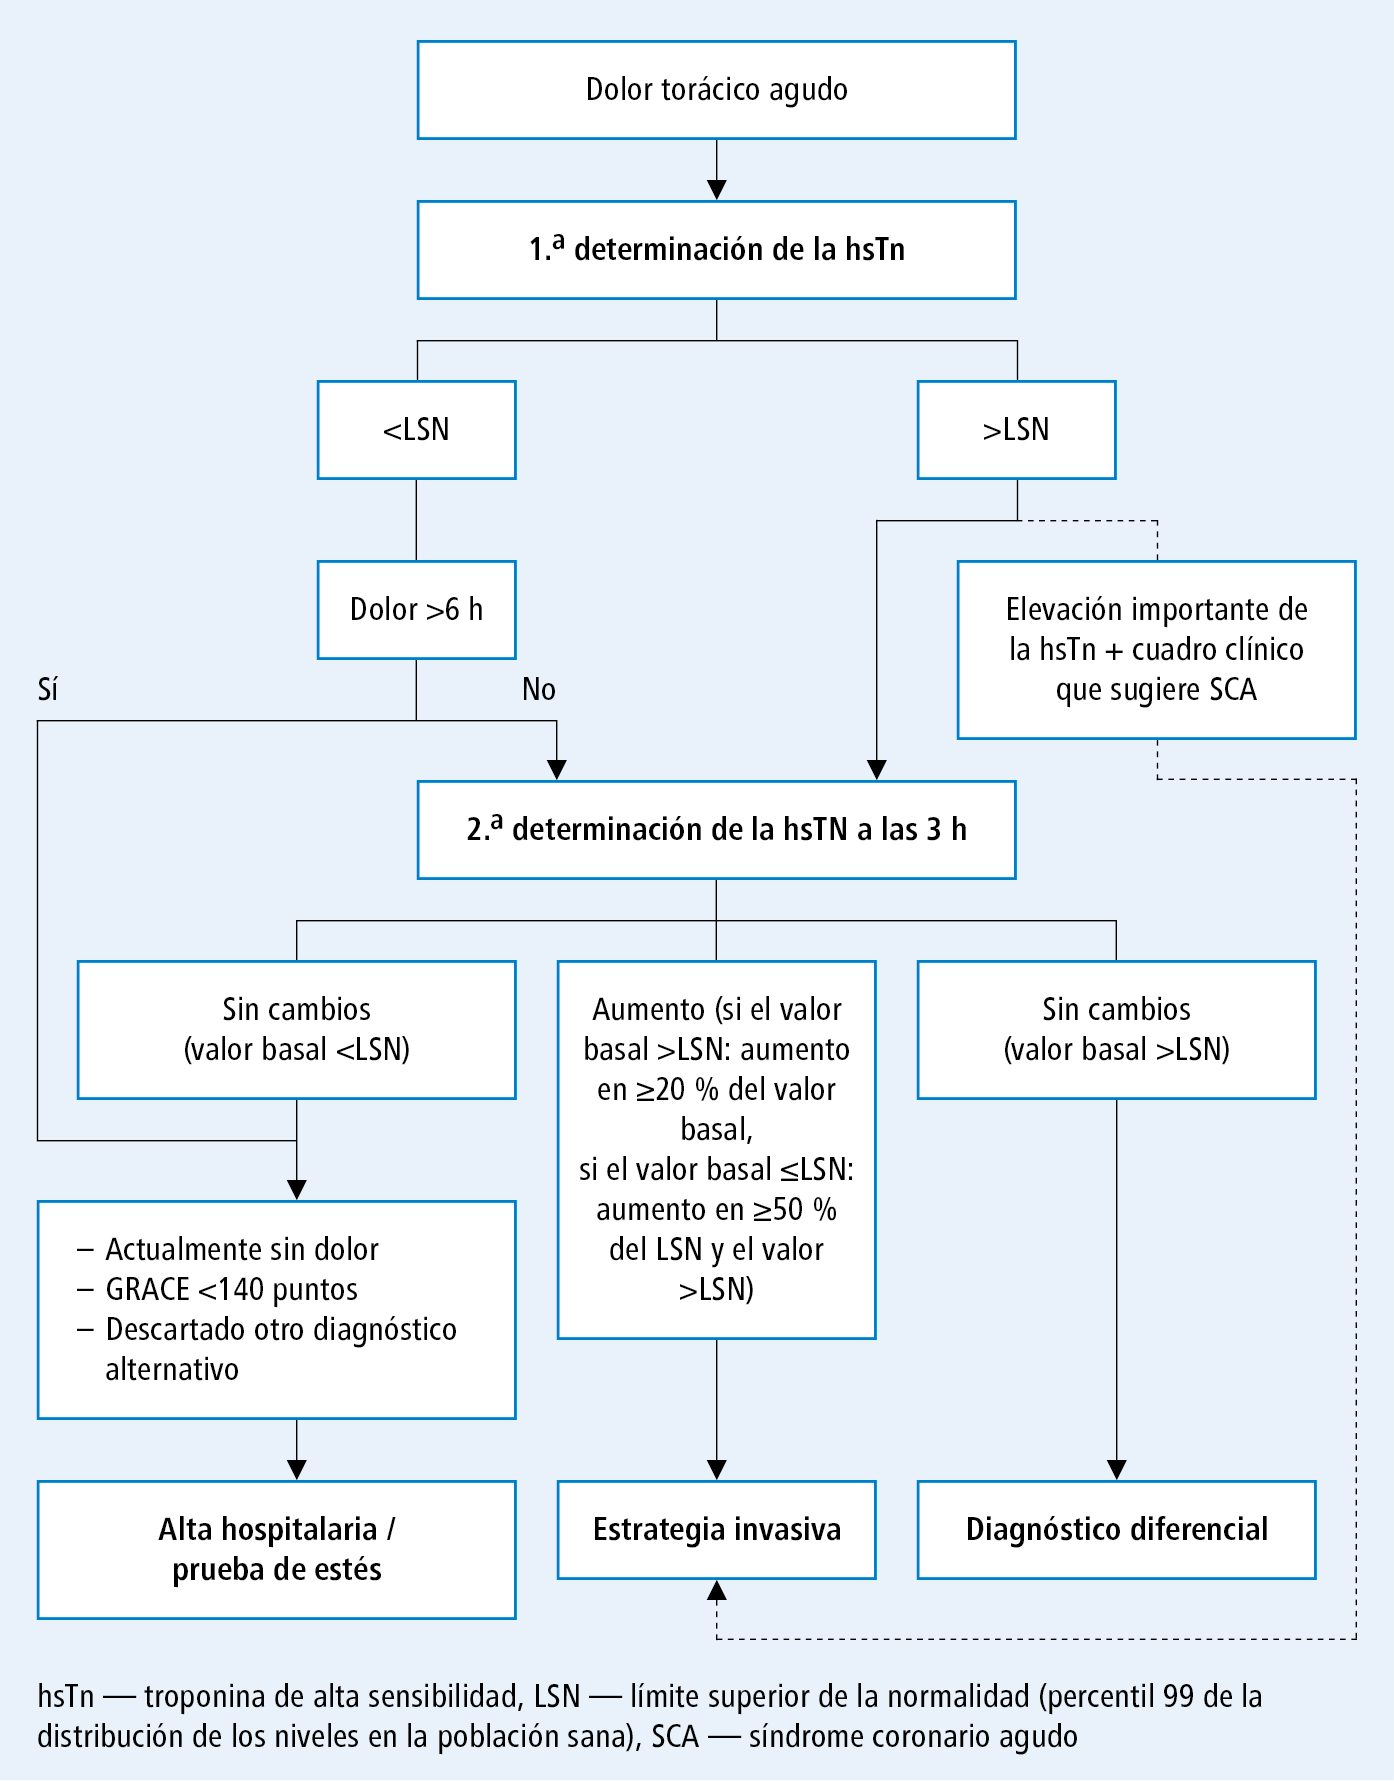  Algoritmo de exclusión rápida del síndrome coronario agudo empleando troponinas de alta sensibilidad (basado en las guías de la ESC 2015 y  Eur. Heart J.,   2012; 33: 2252–2257 , modificado) 